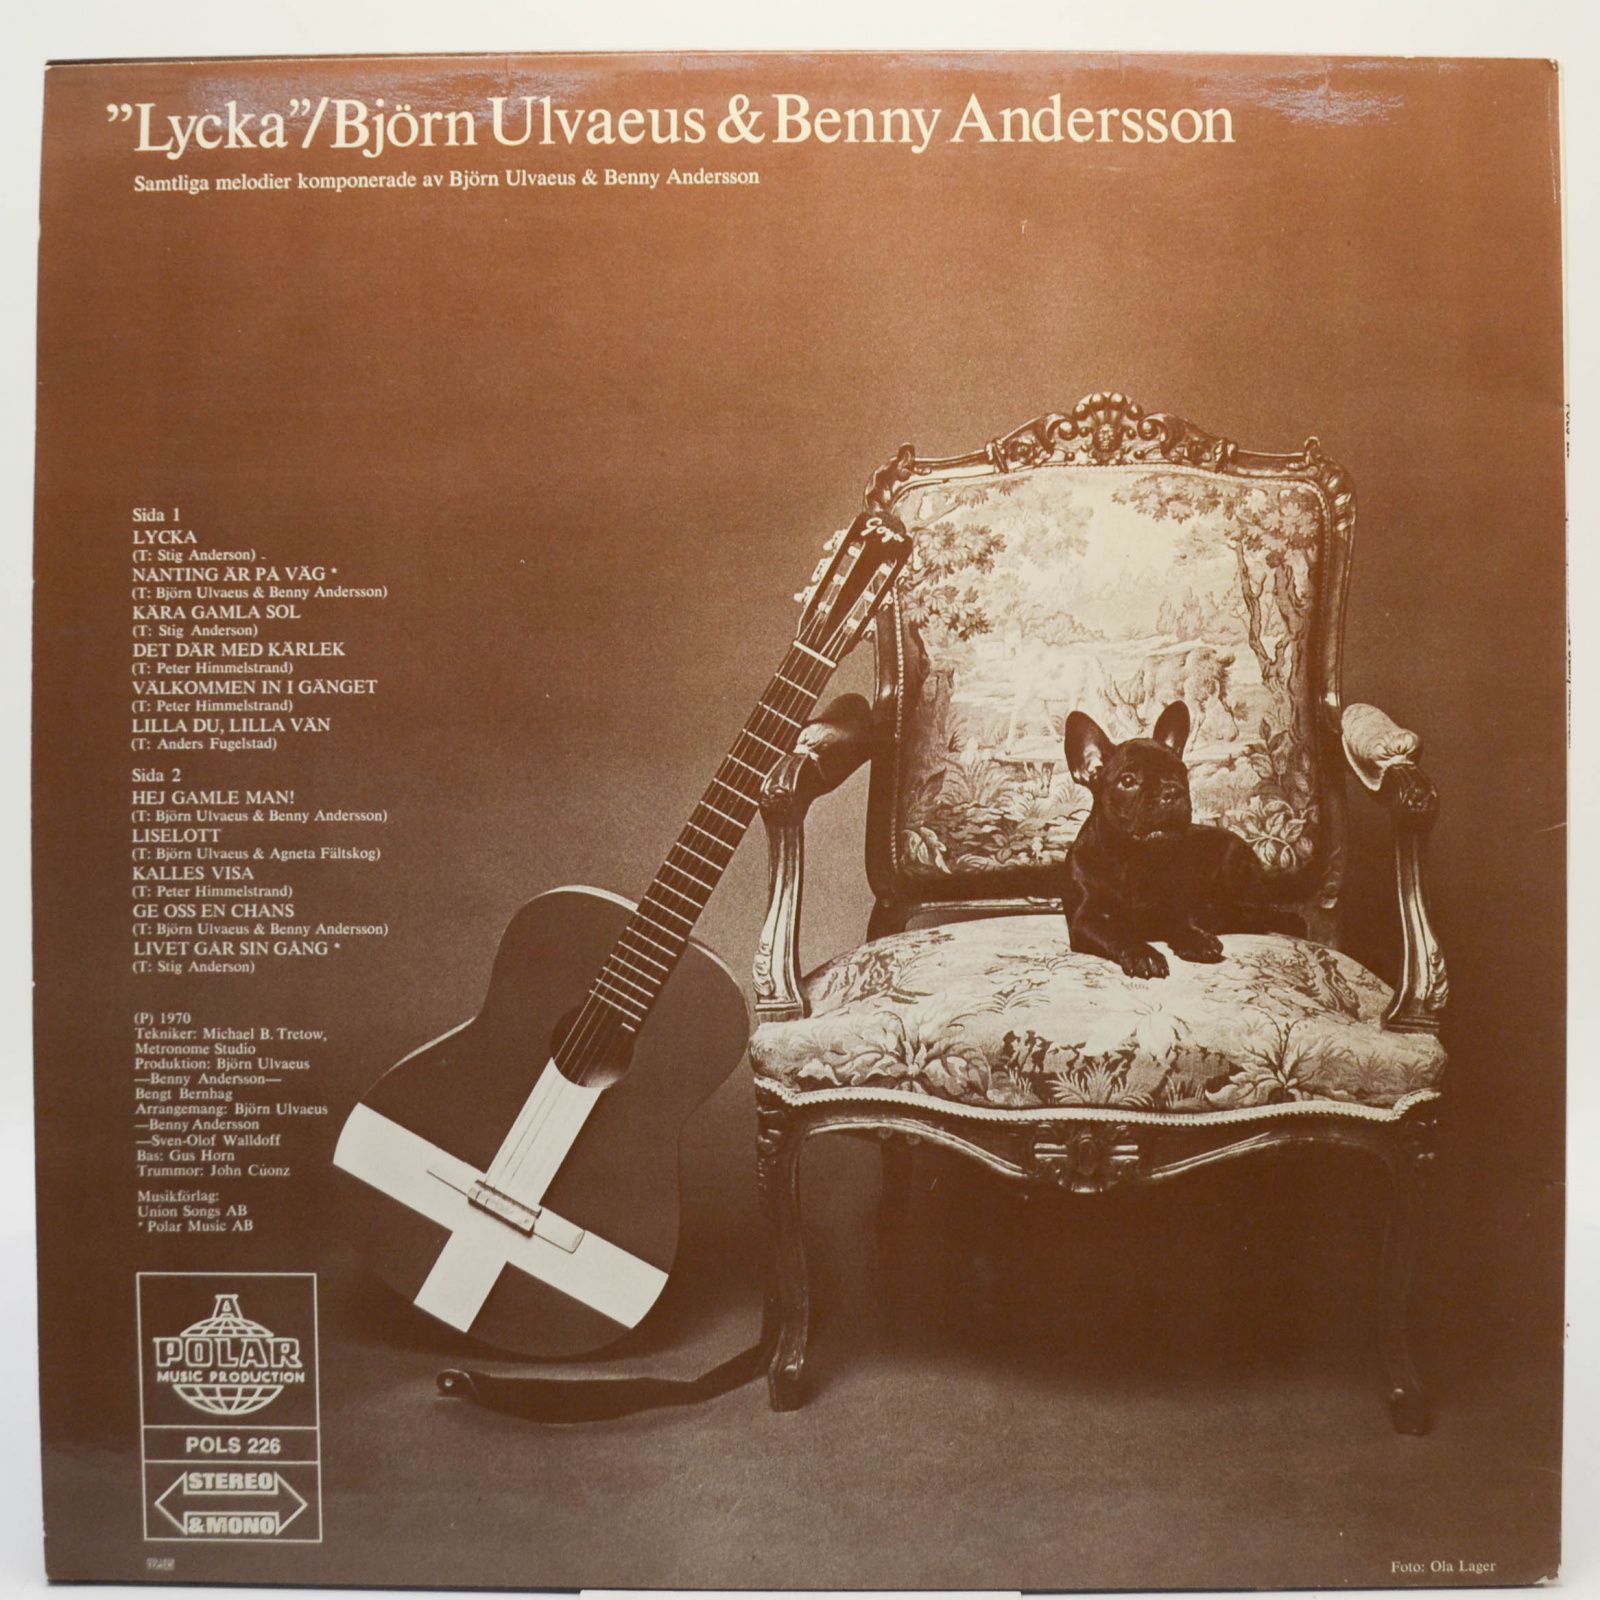 Björn Ulvaeus & Benny Andersson — "Lycka" (Sweden), 1970